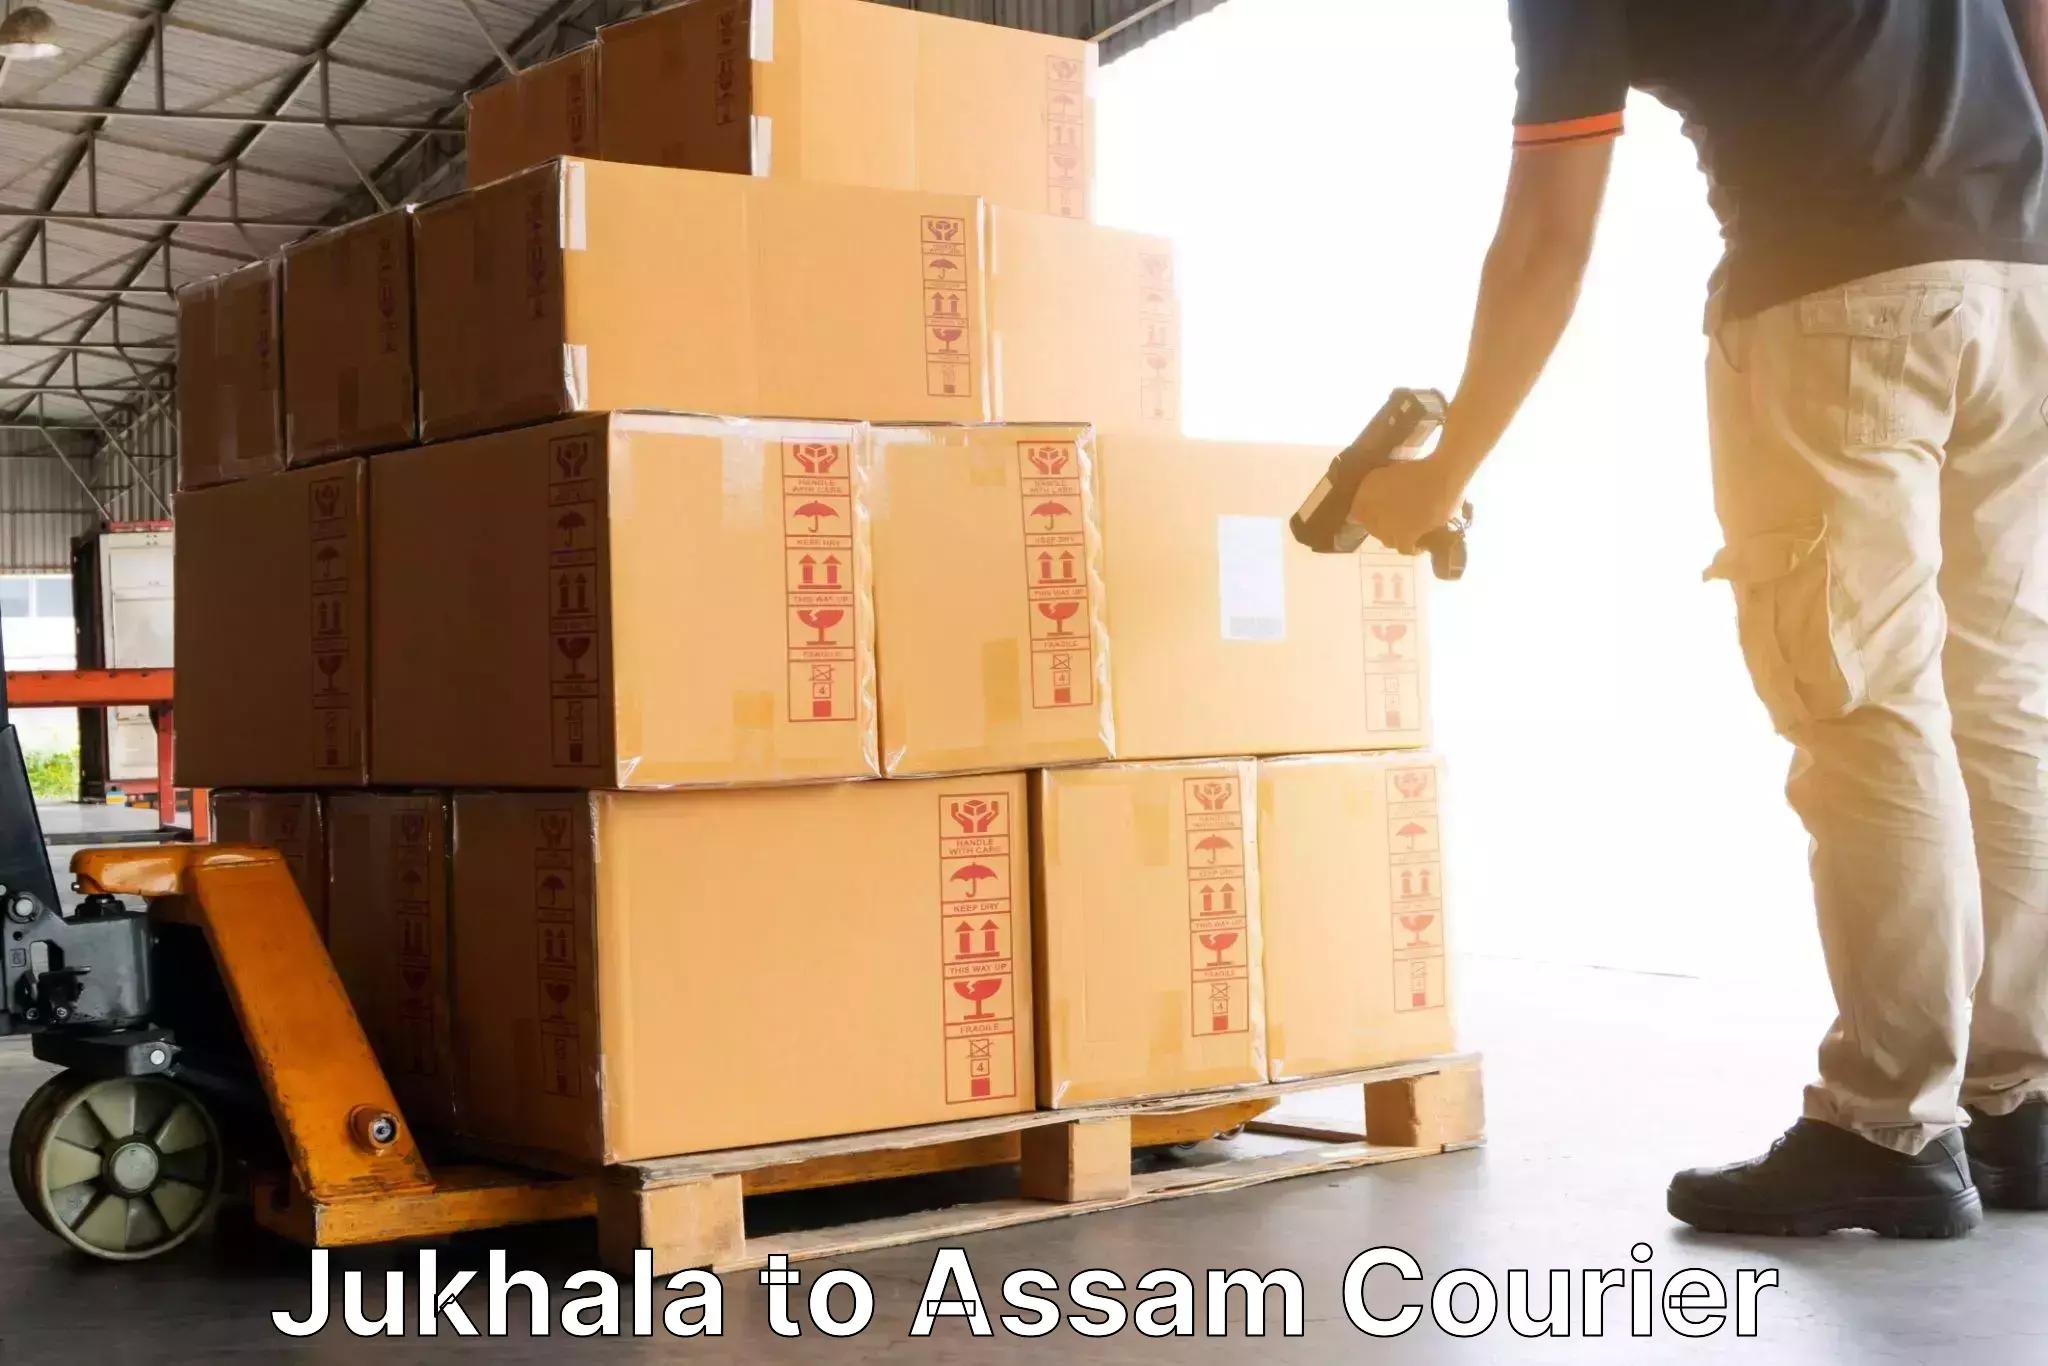 On-demand shipping options Jukhala to Lakhipur